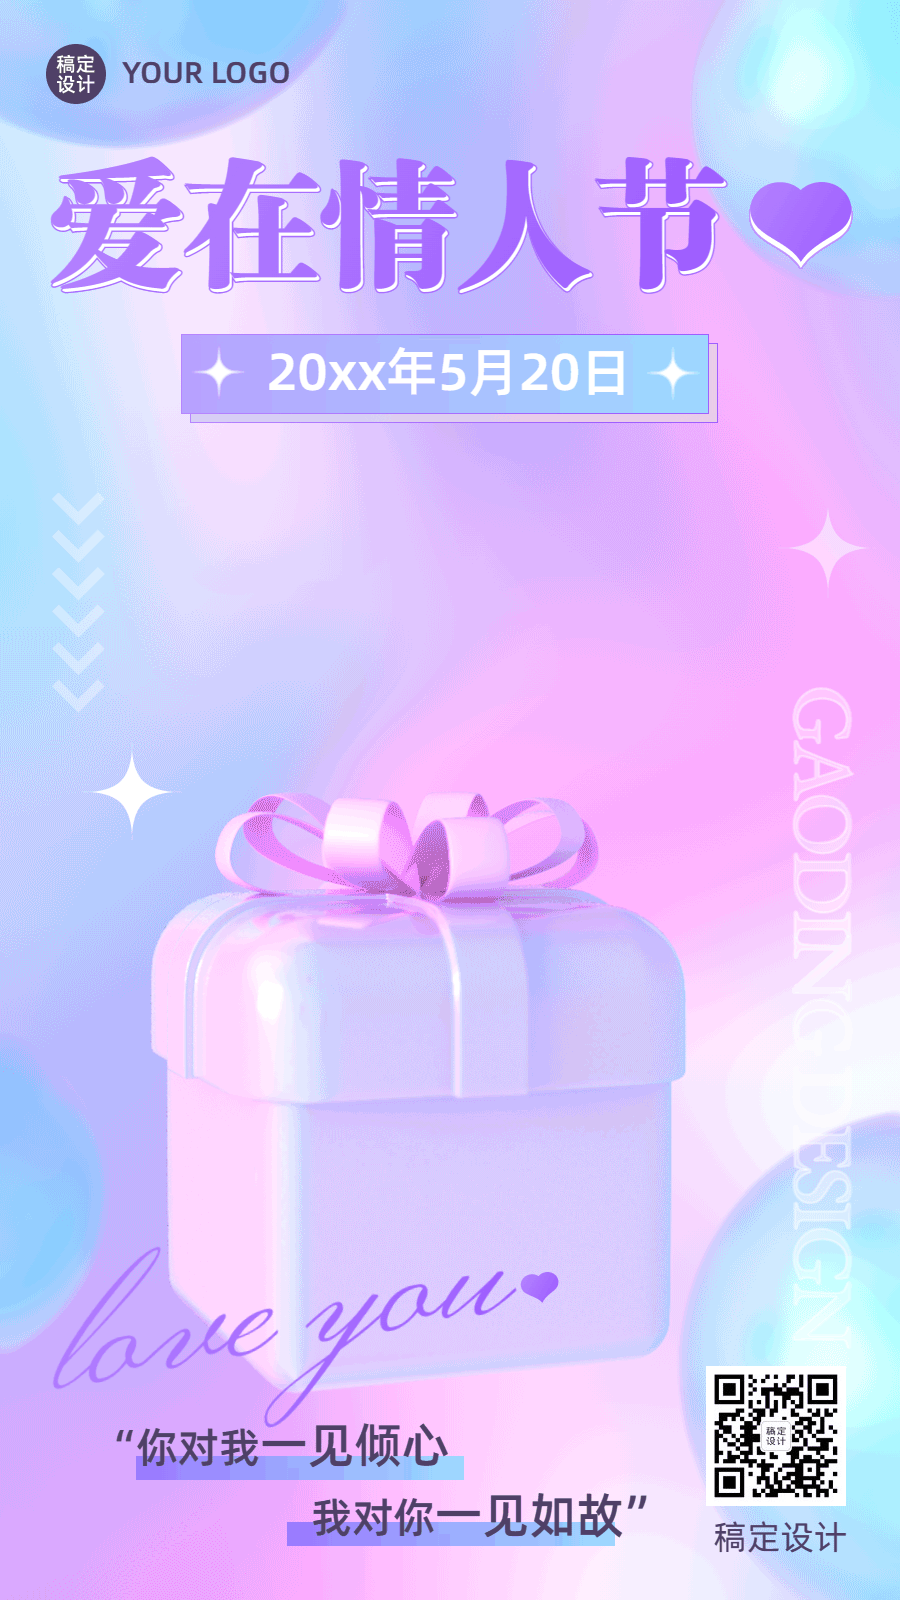 520情人节节日祝福礼物盒动态海报预览效果